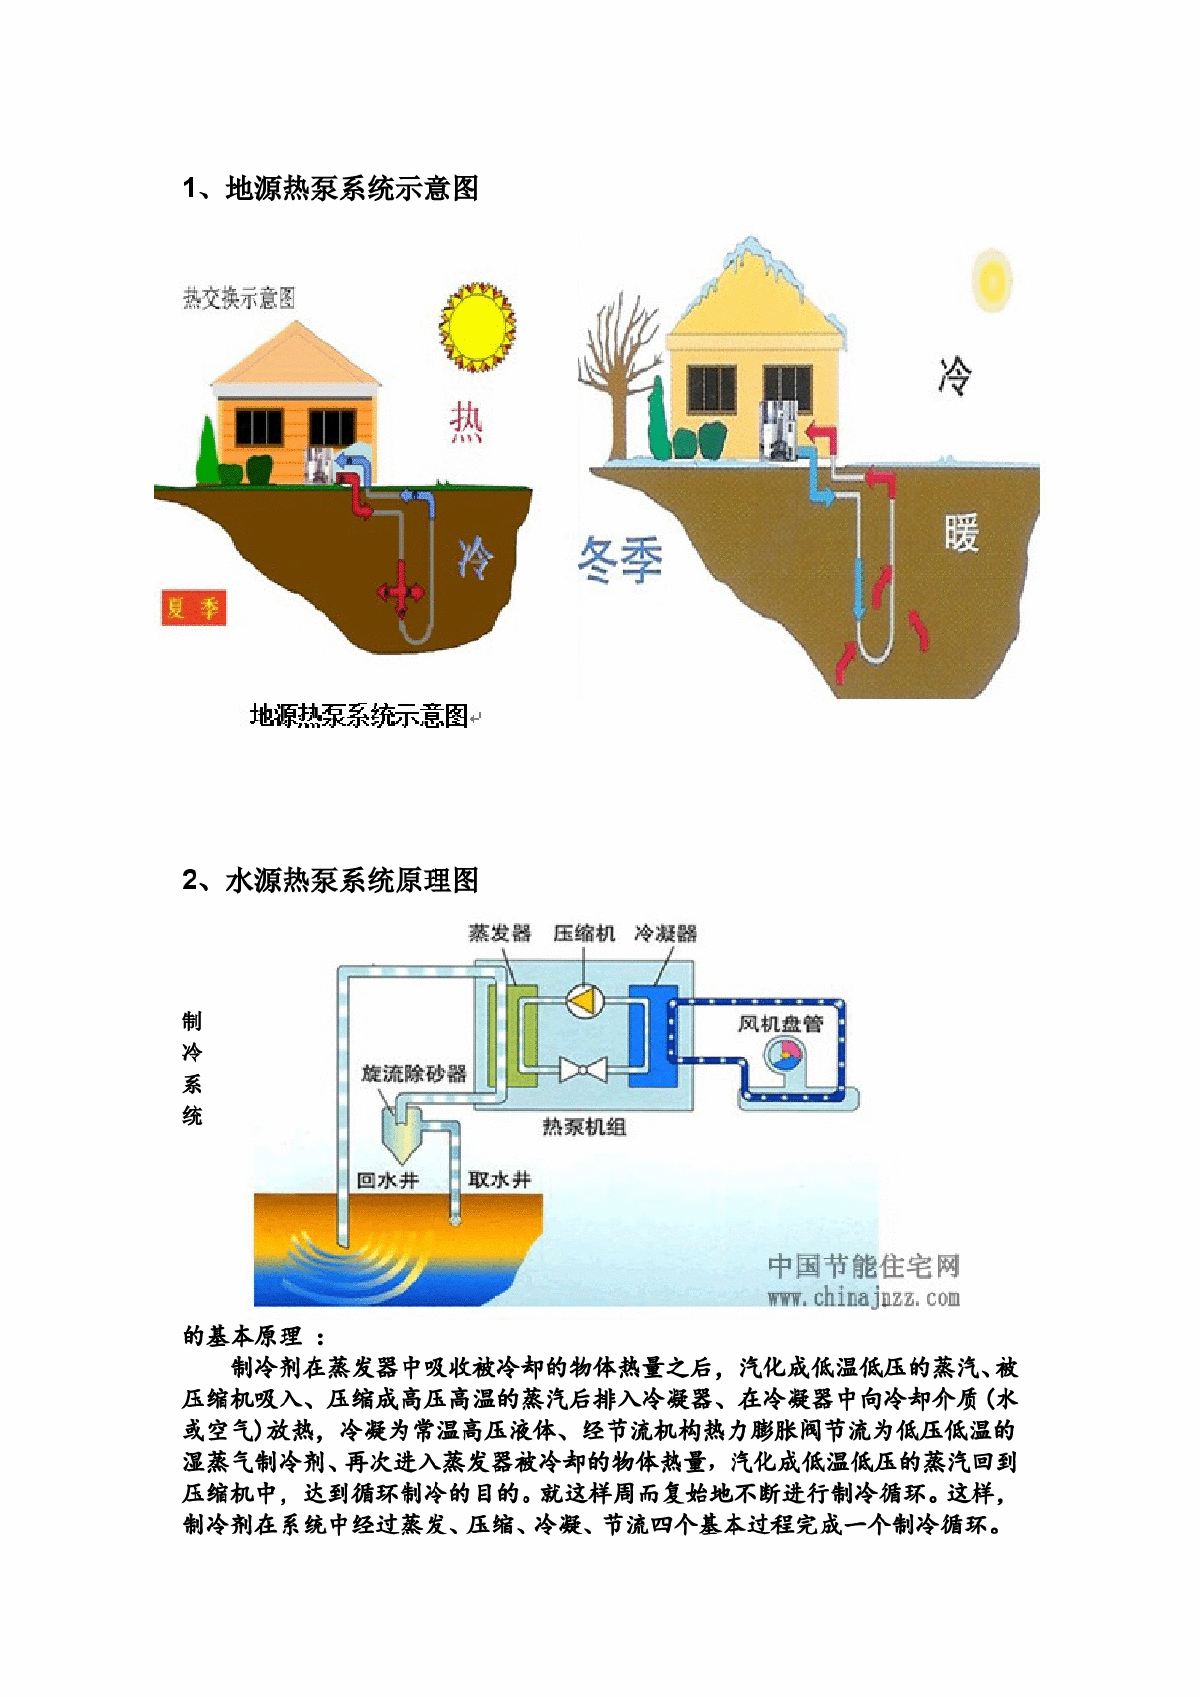 热泵系统的工作原理图解、水地源热泵